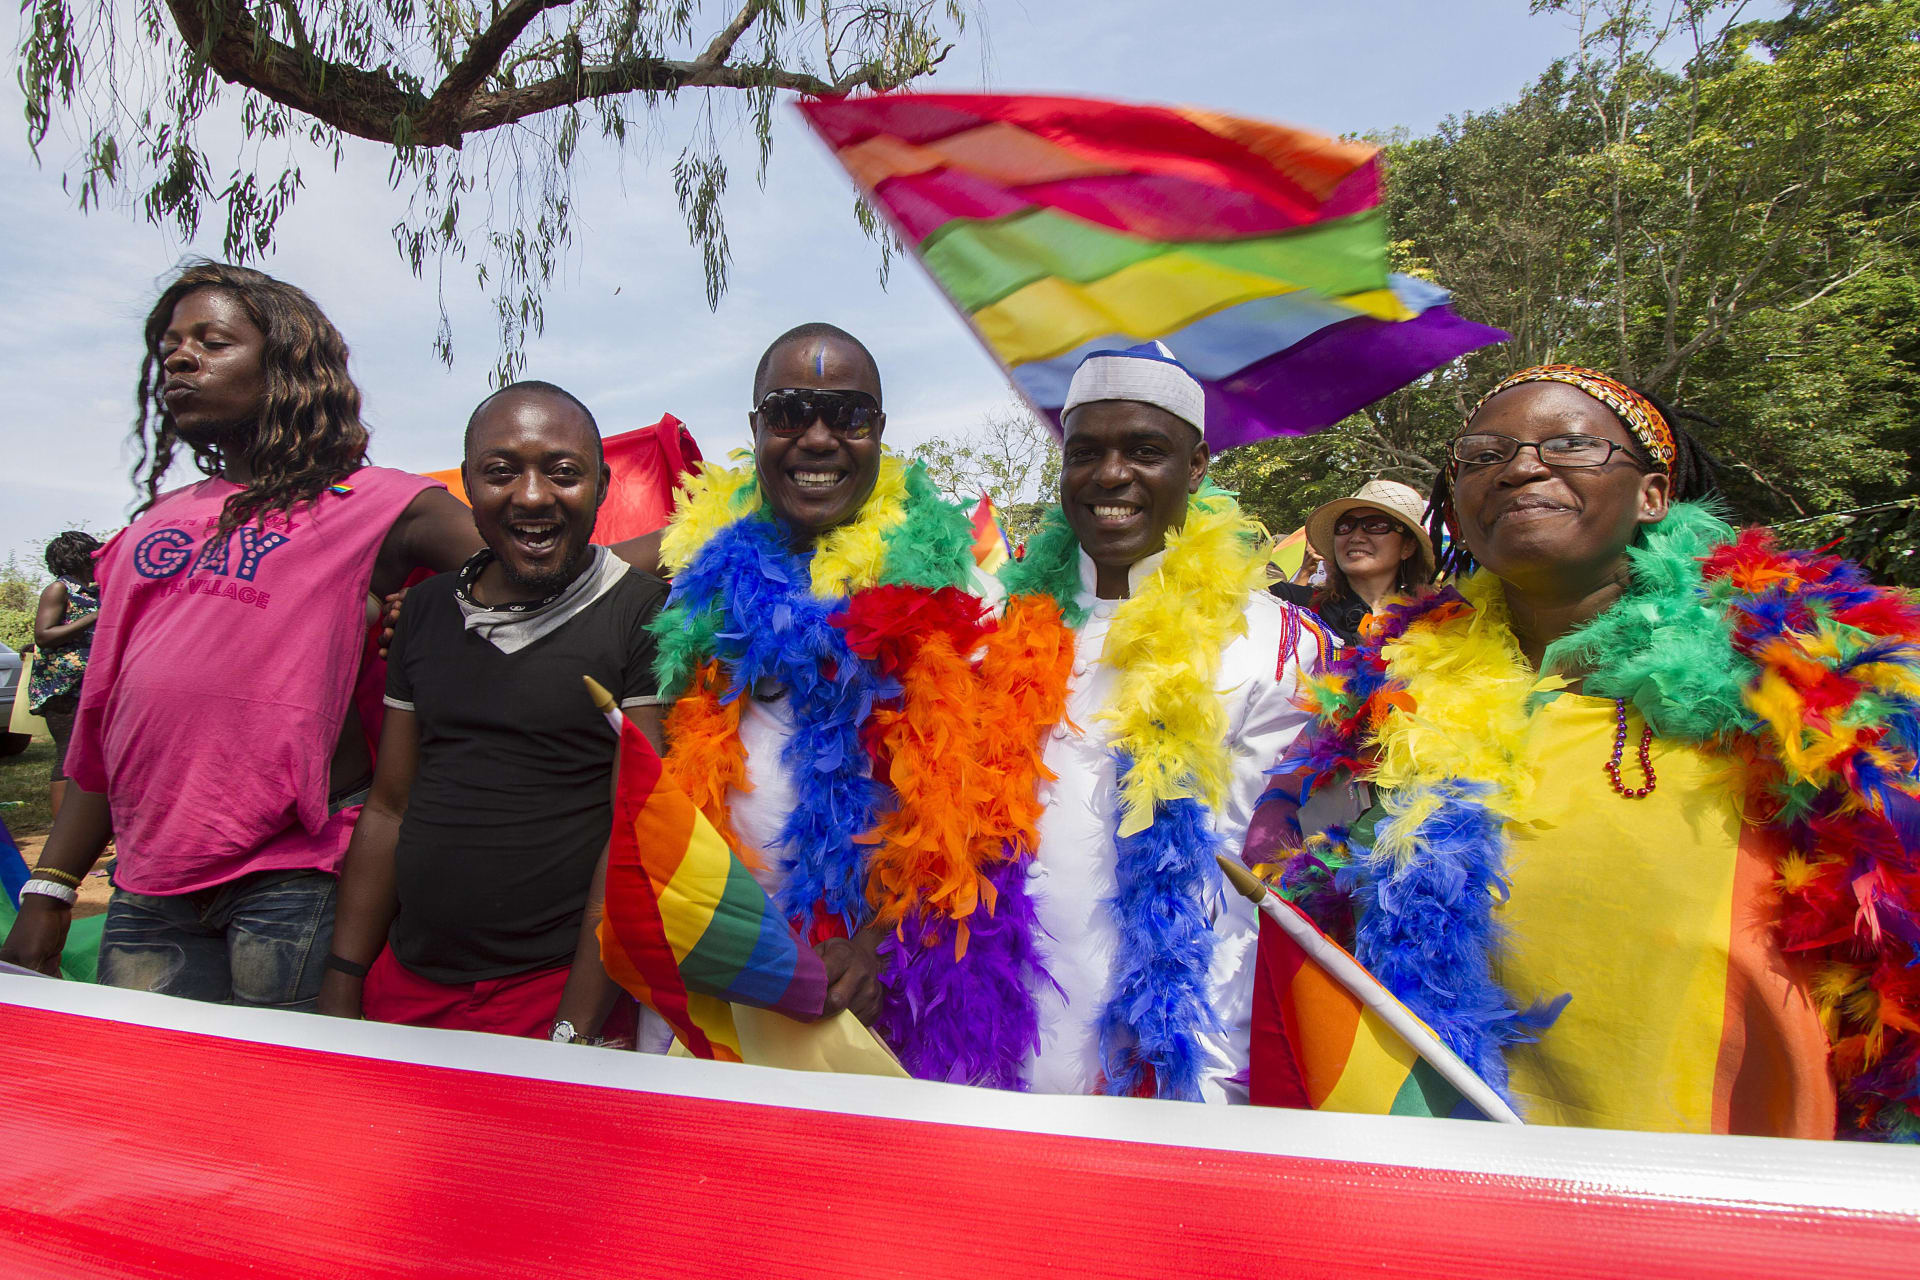 بعد القانون الأكثر قسوة ضد المثليين في أوغندا.. أمريكا تُعلق وتتحرك